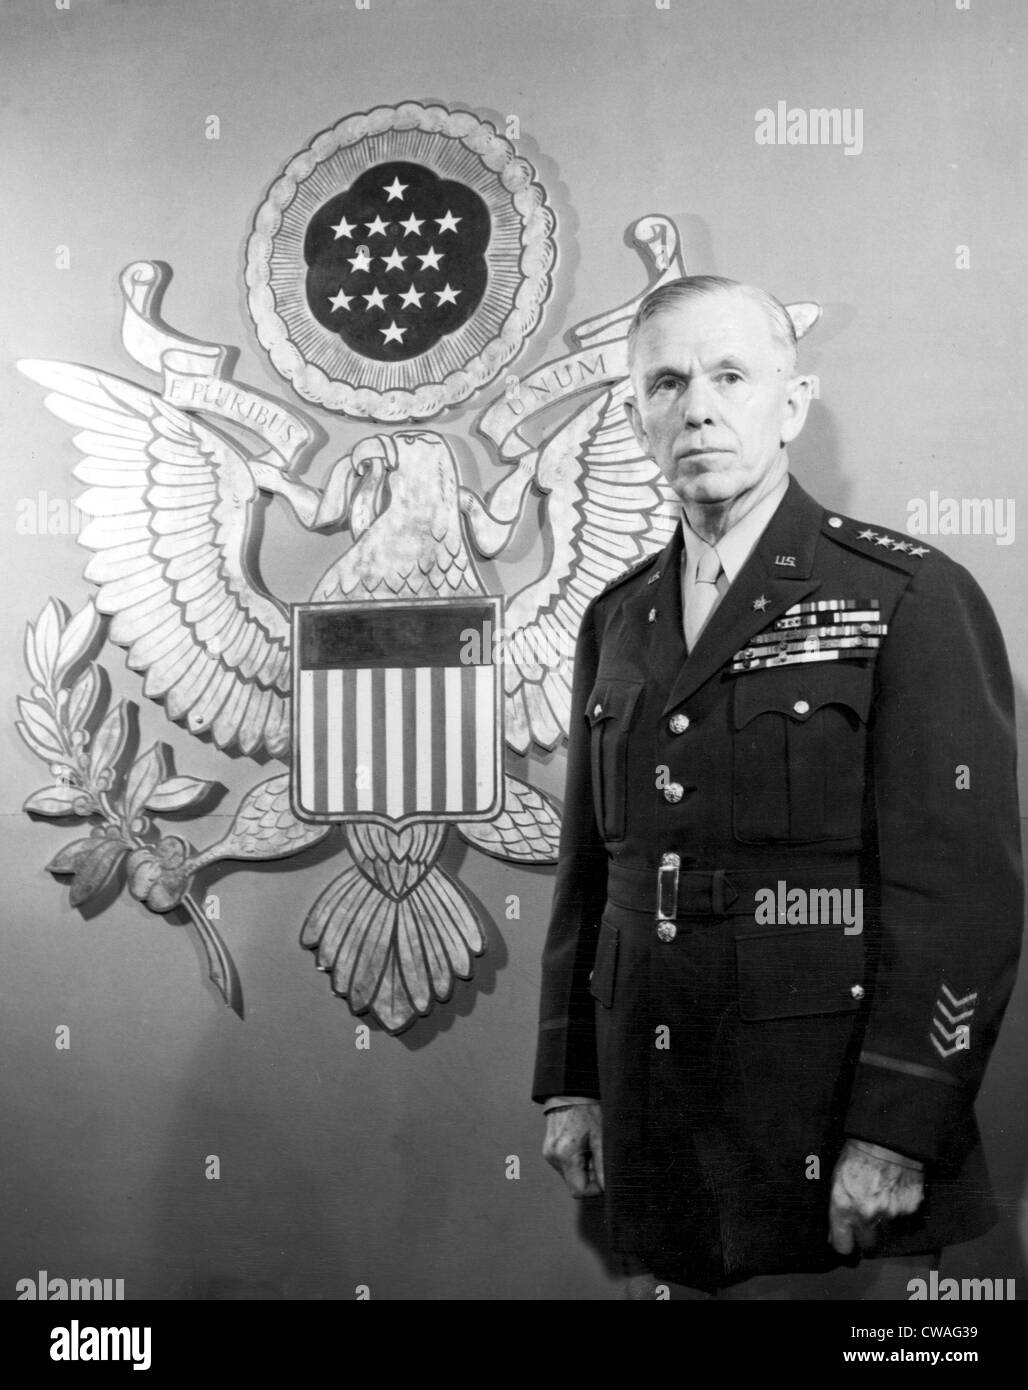 El general George C. Marshall de pie en frente de un agrandamiento Ofiicers' Insignia, 1943. Cortesía: CSU Archives / Everett Foto de stock